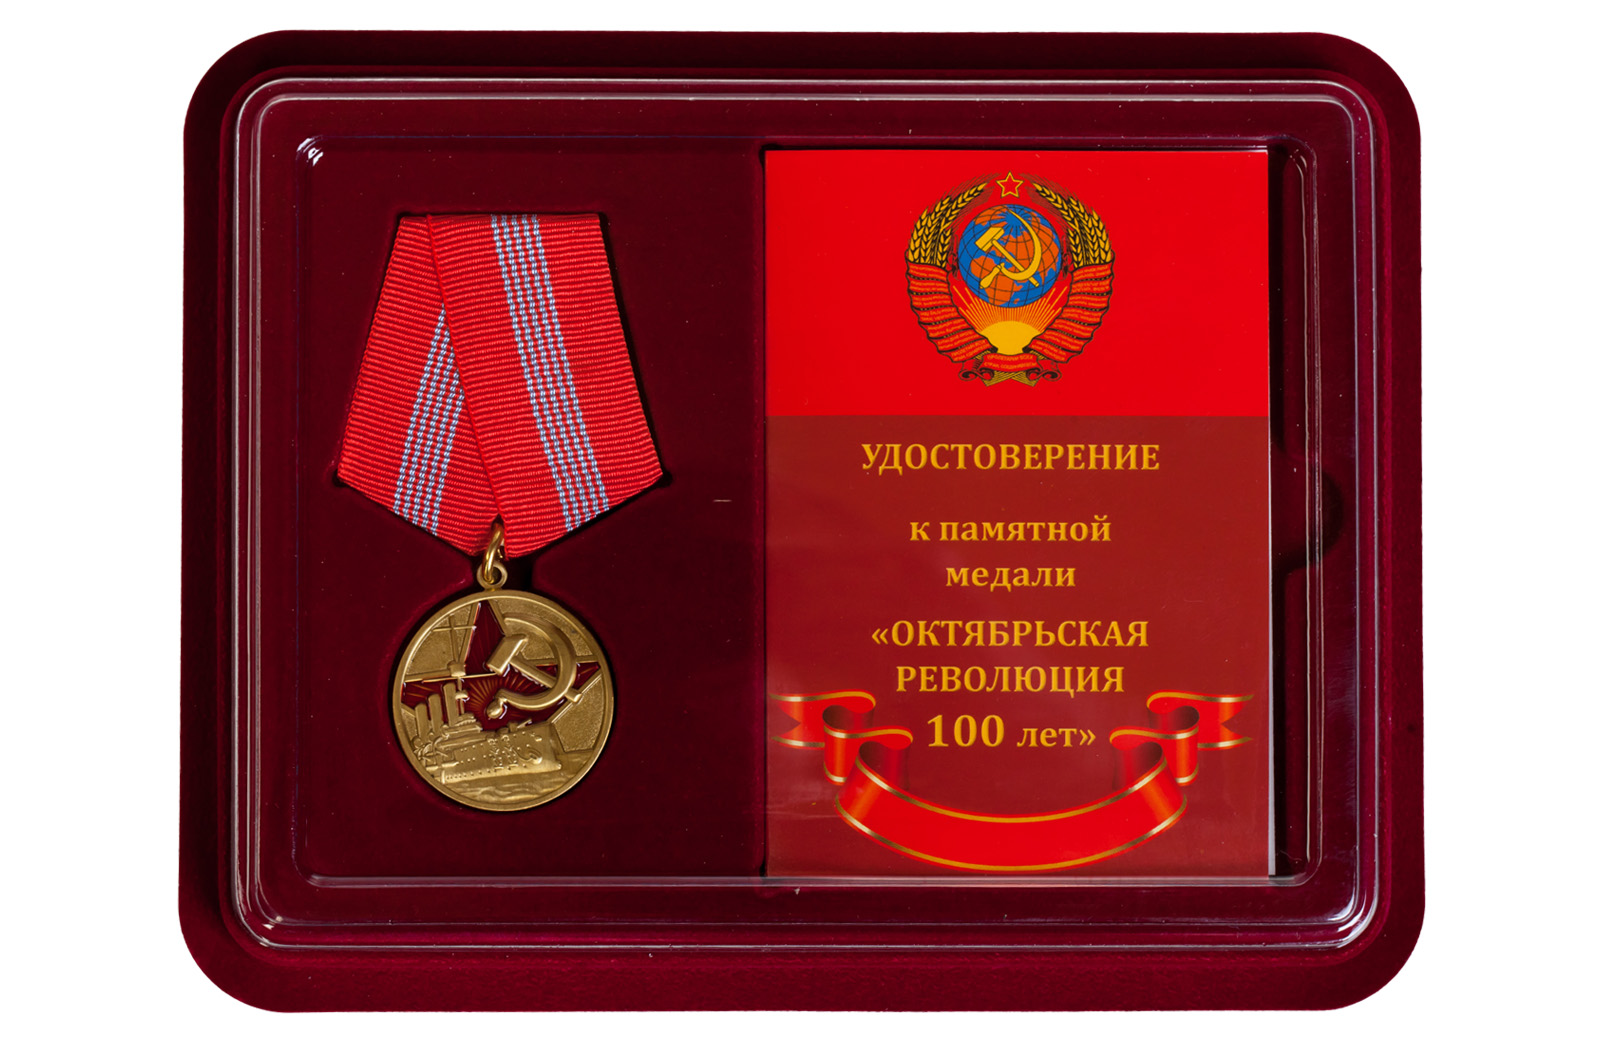 Купить юбилейную медаль 100 лет Великой Октябрьской Революции онлайн